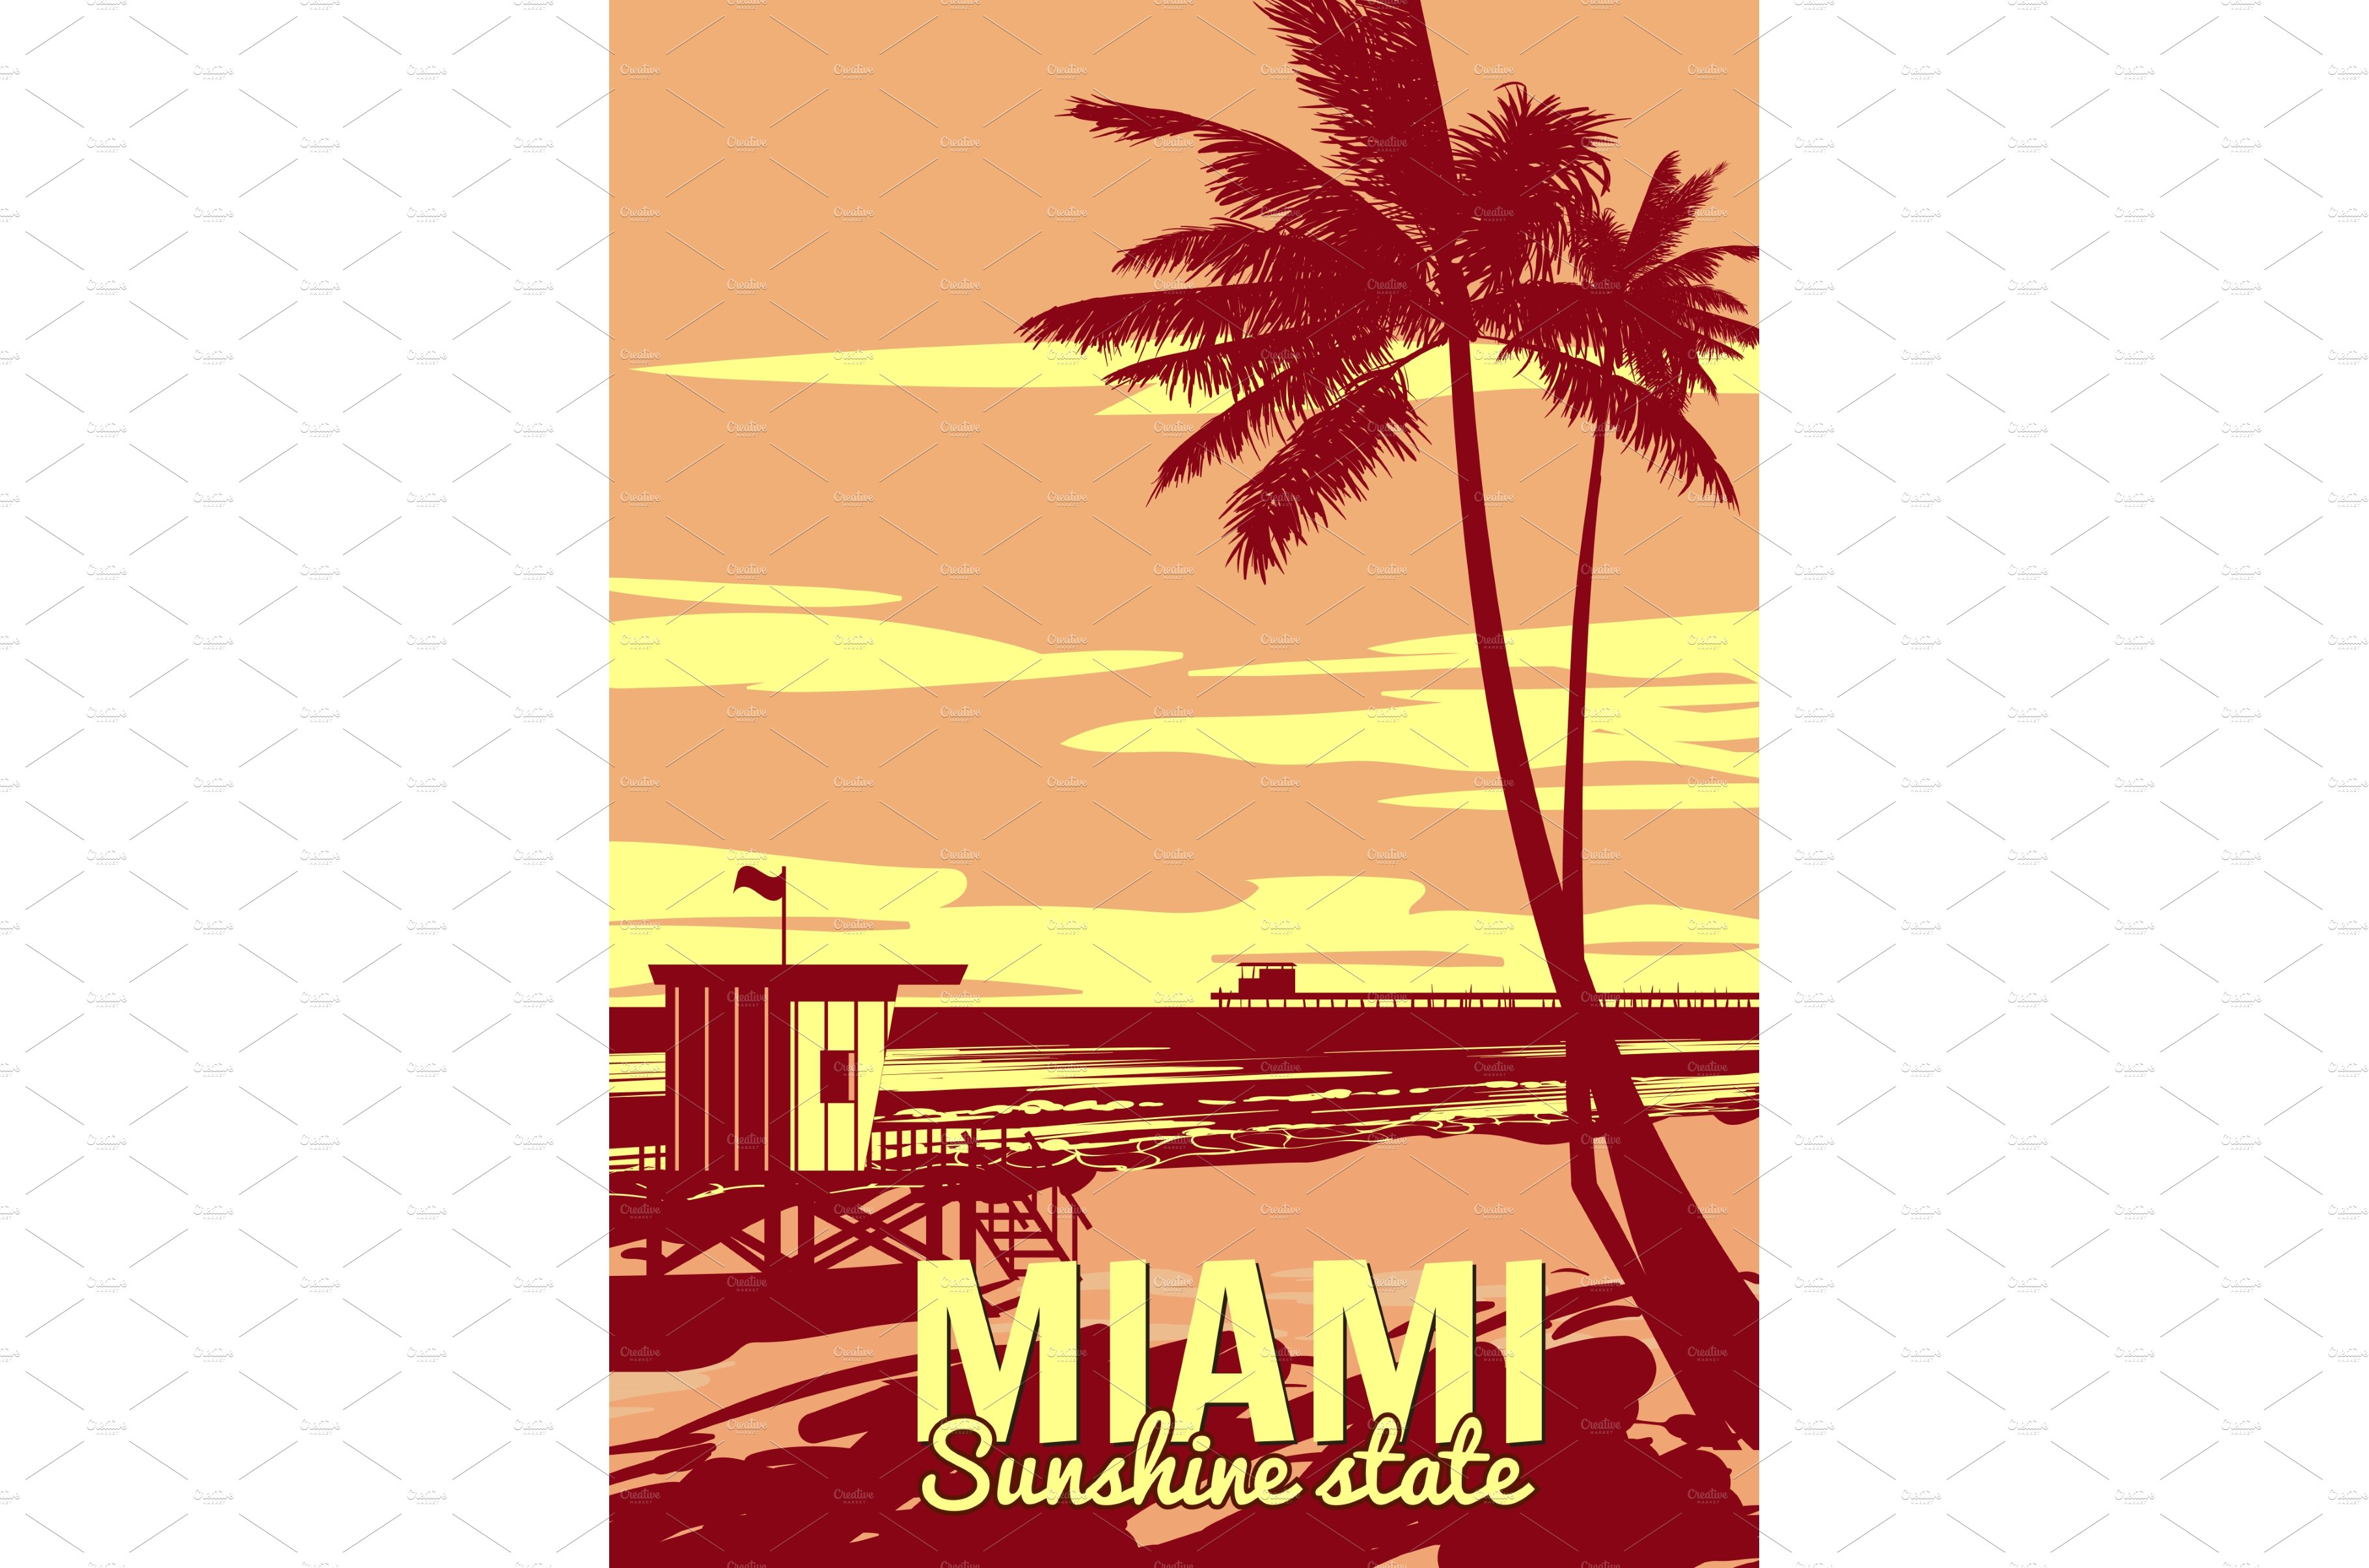 Miami Beach Retro Poster. Lifeguard cover image.